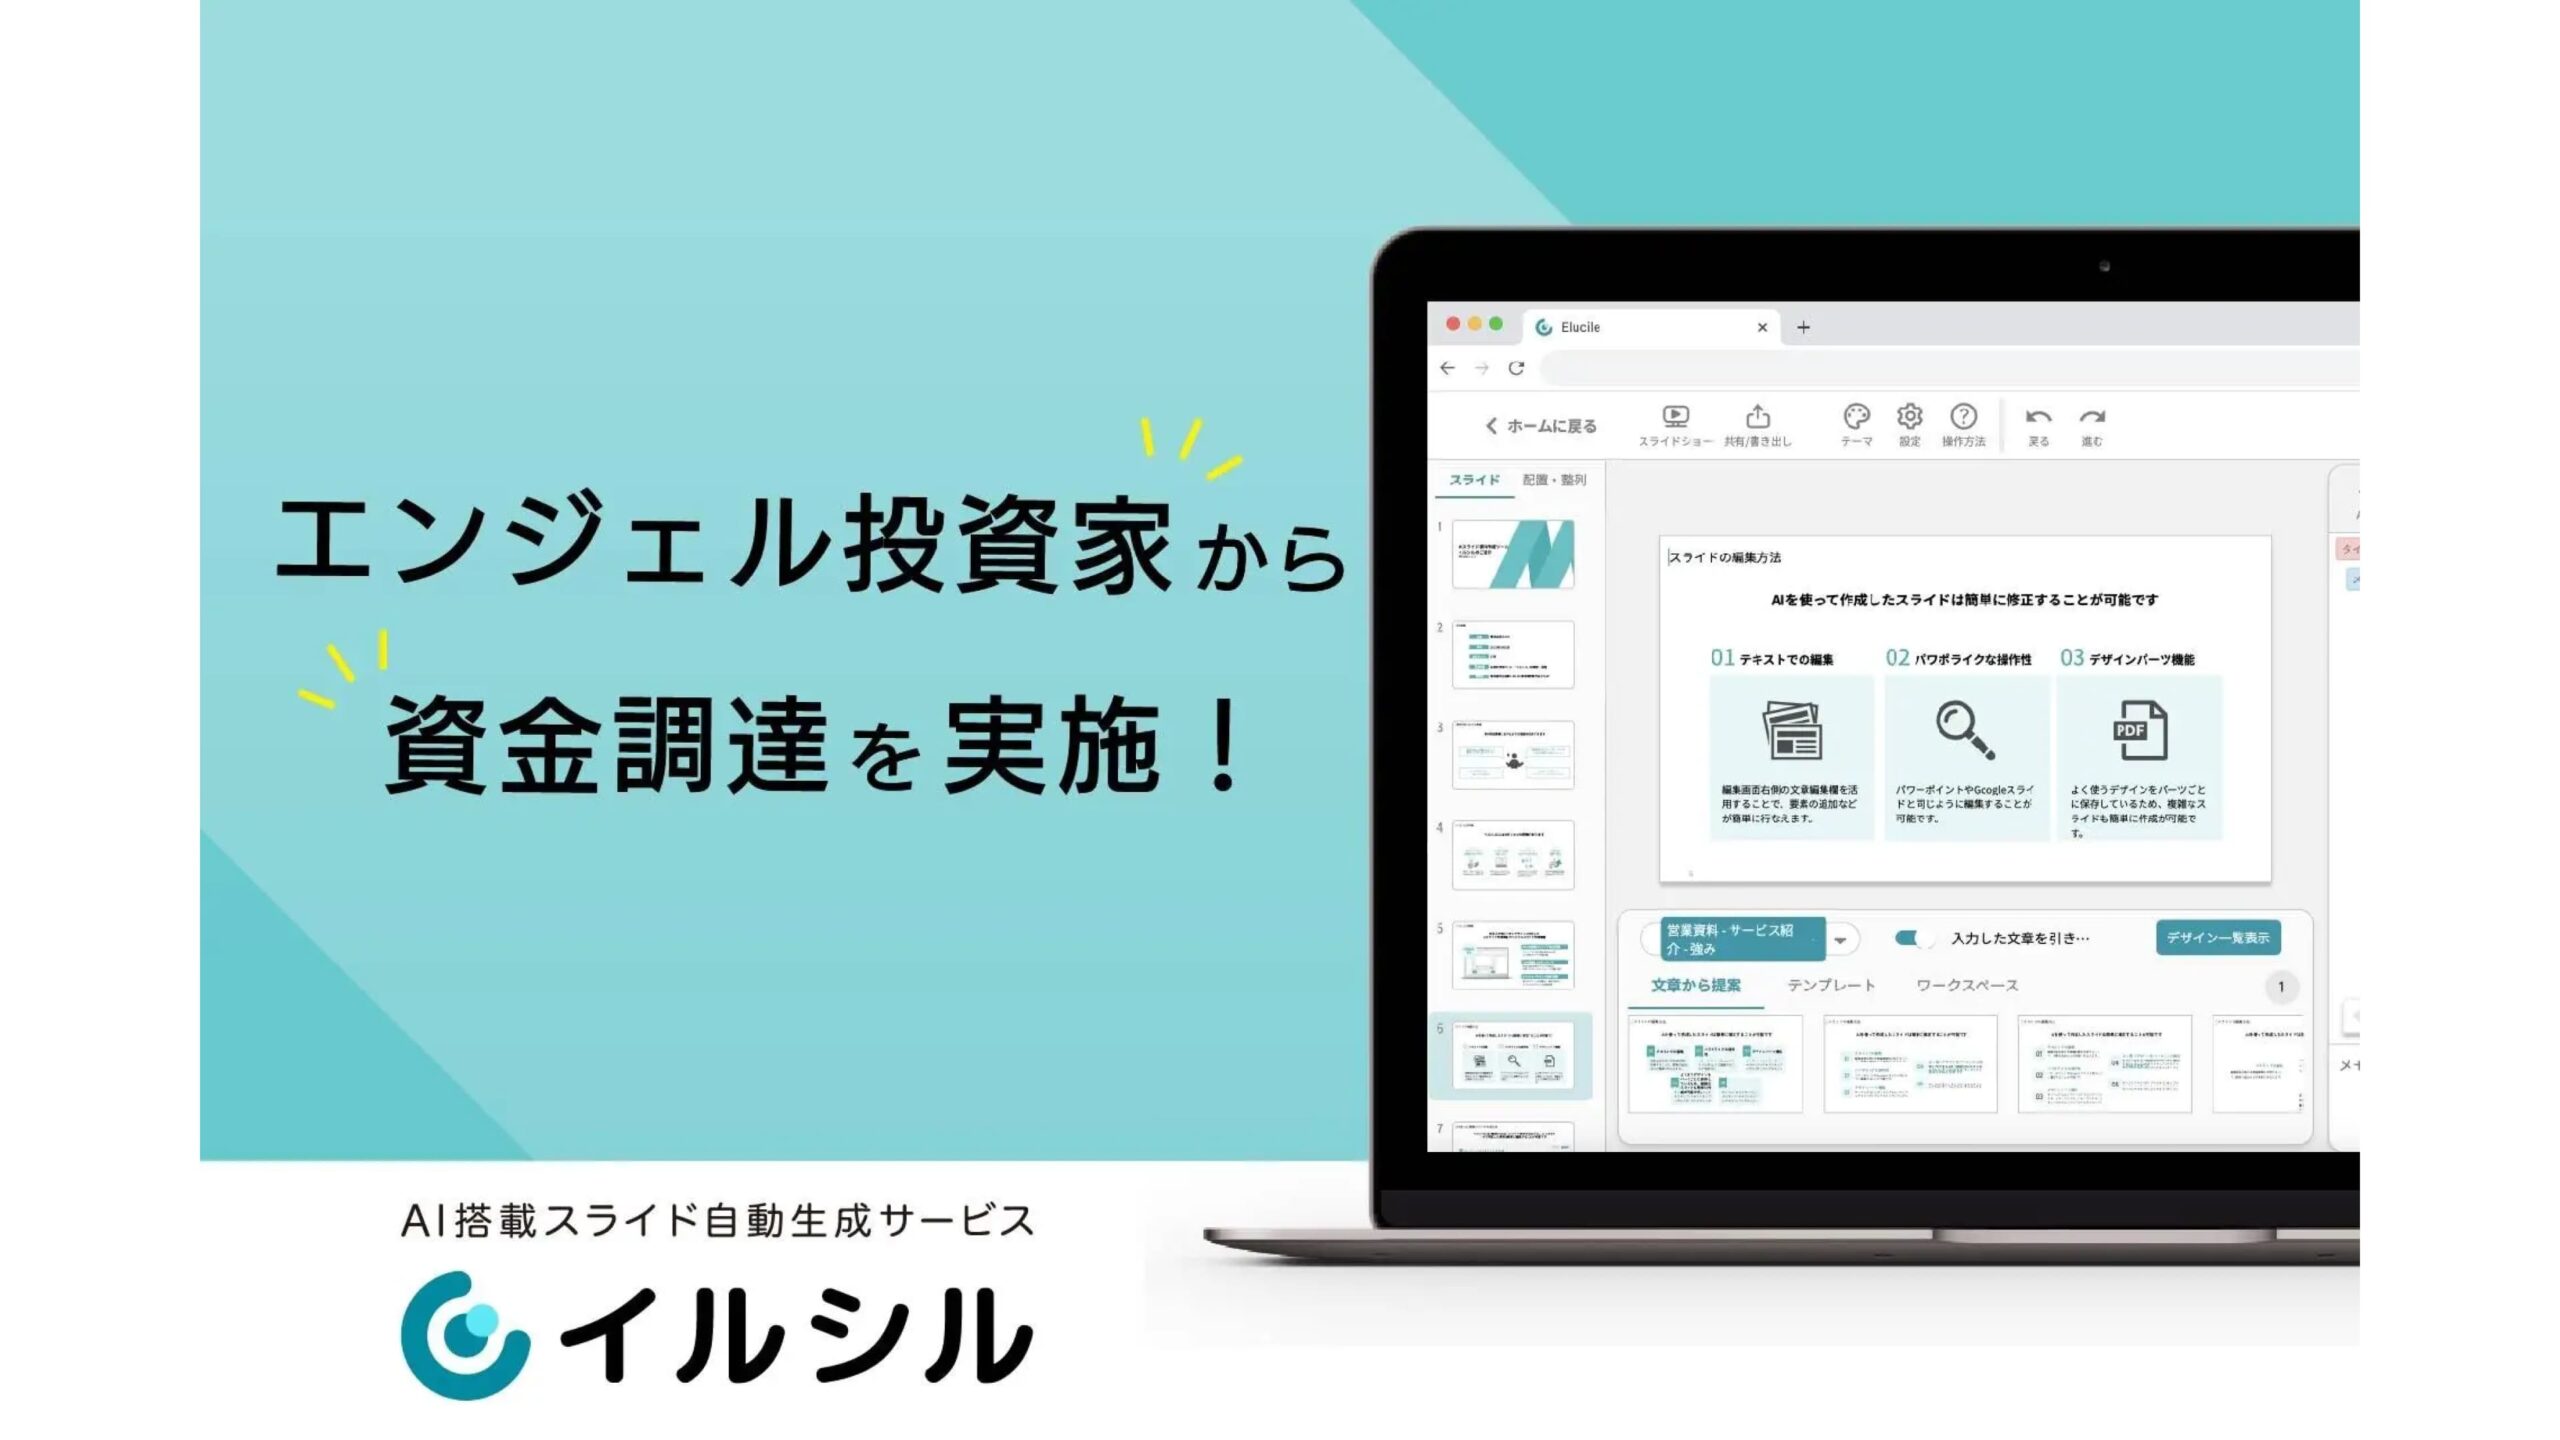 日本人向けのAI搭載スライド自動生成サービス「イルシル」を提供する株式会社ルビスがシードラウンドにて資金調達を実施